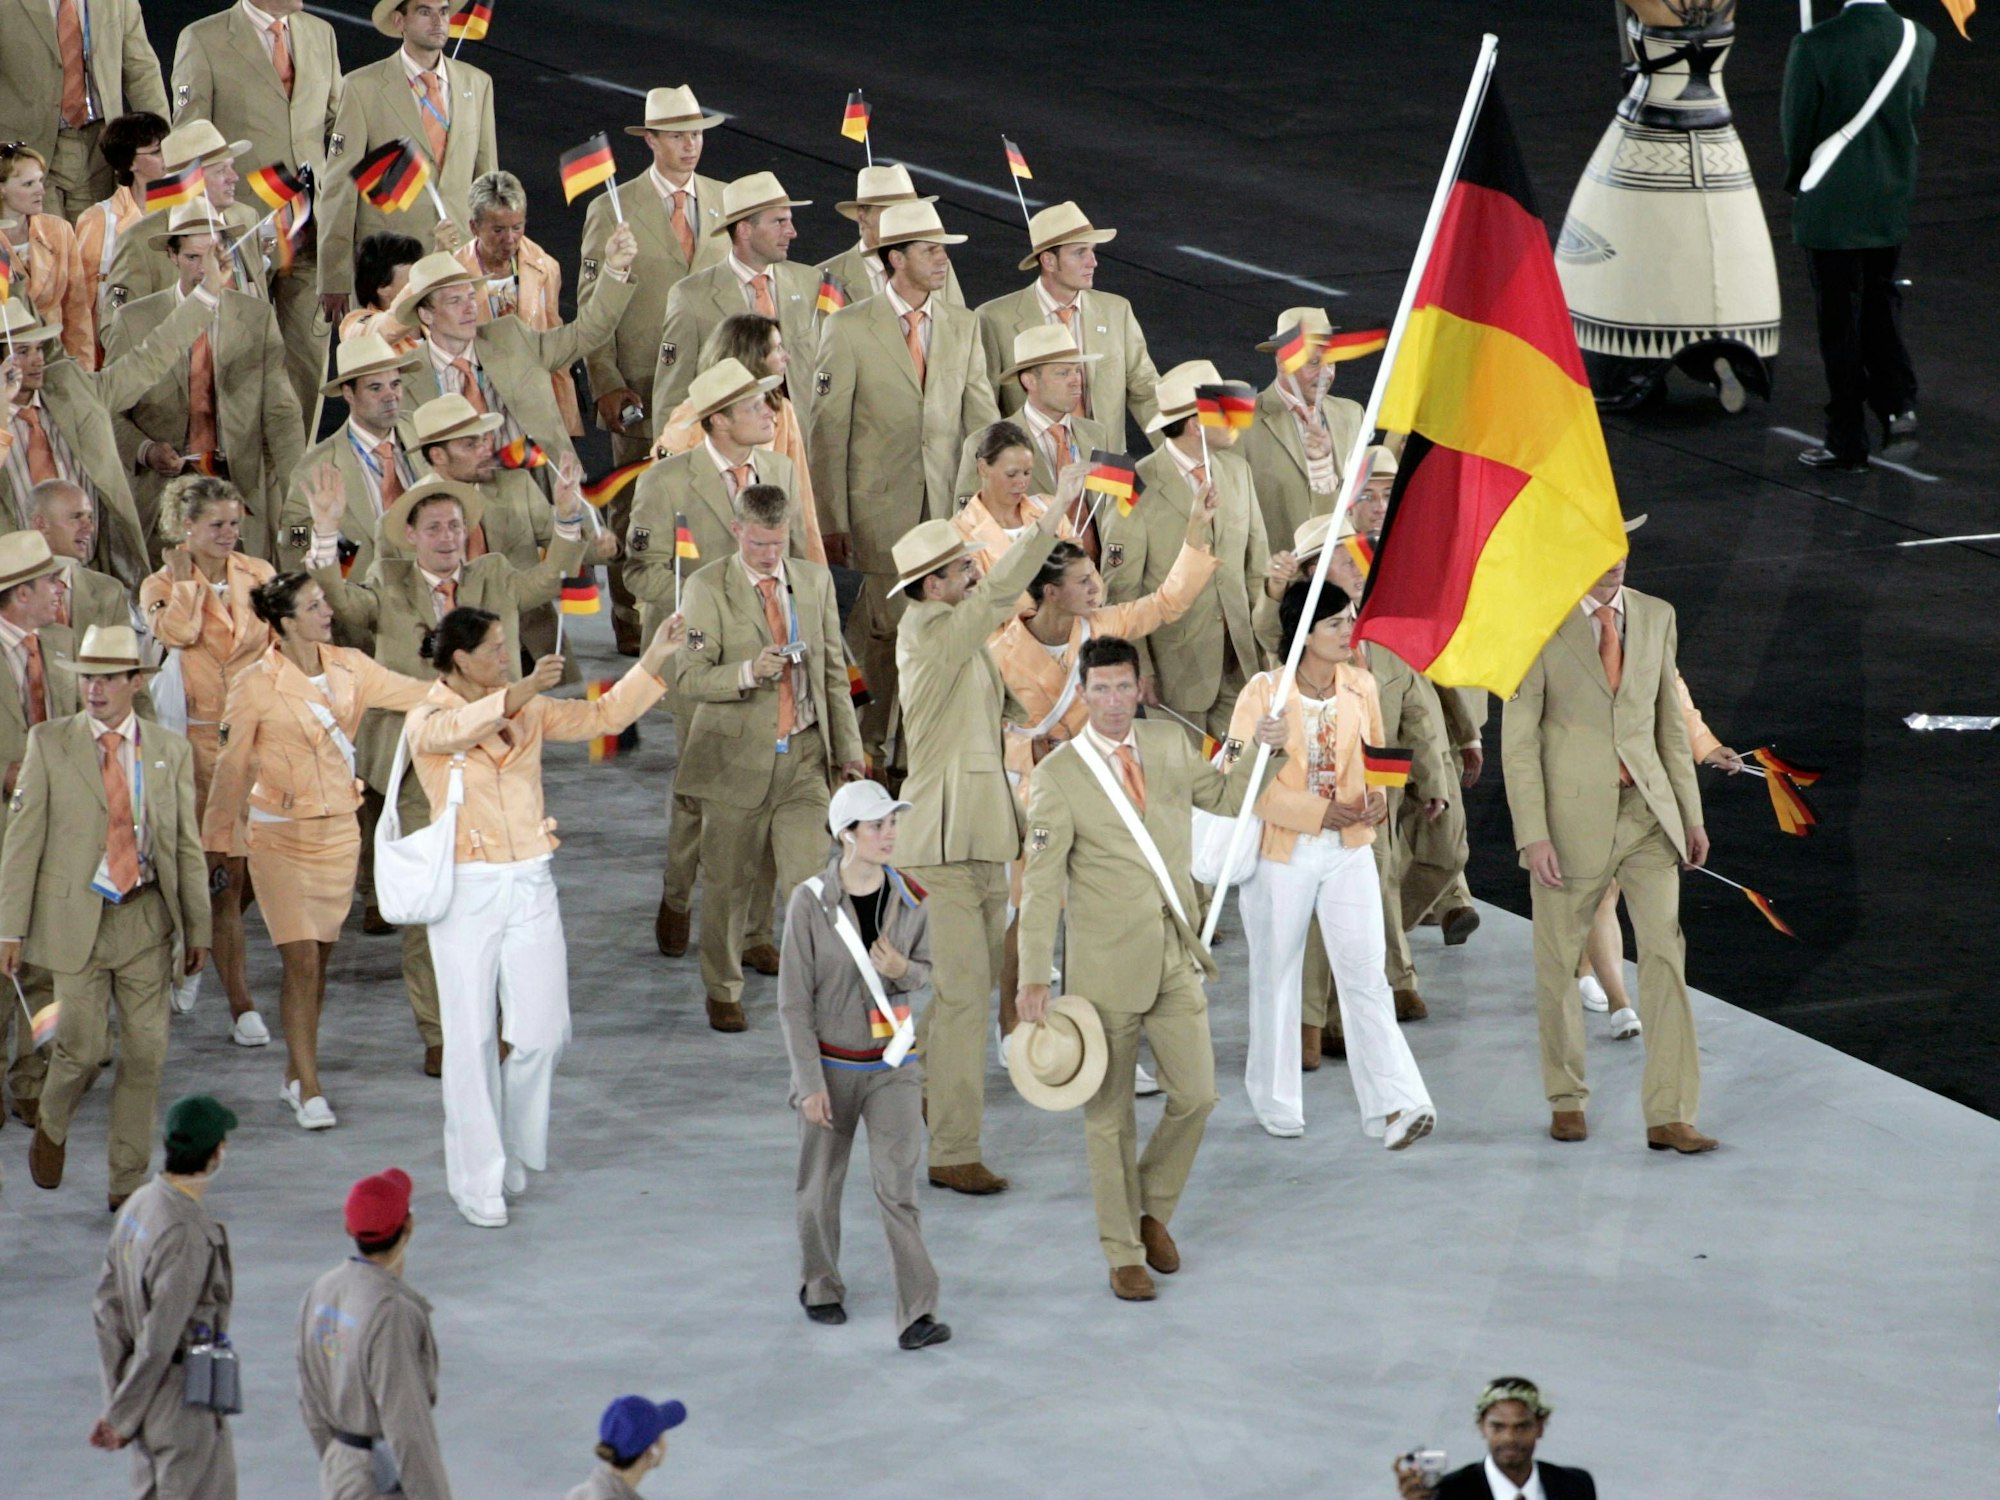 Die deutsche Olympiamannschaft angeführt von Ludger Beerbaum